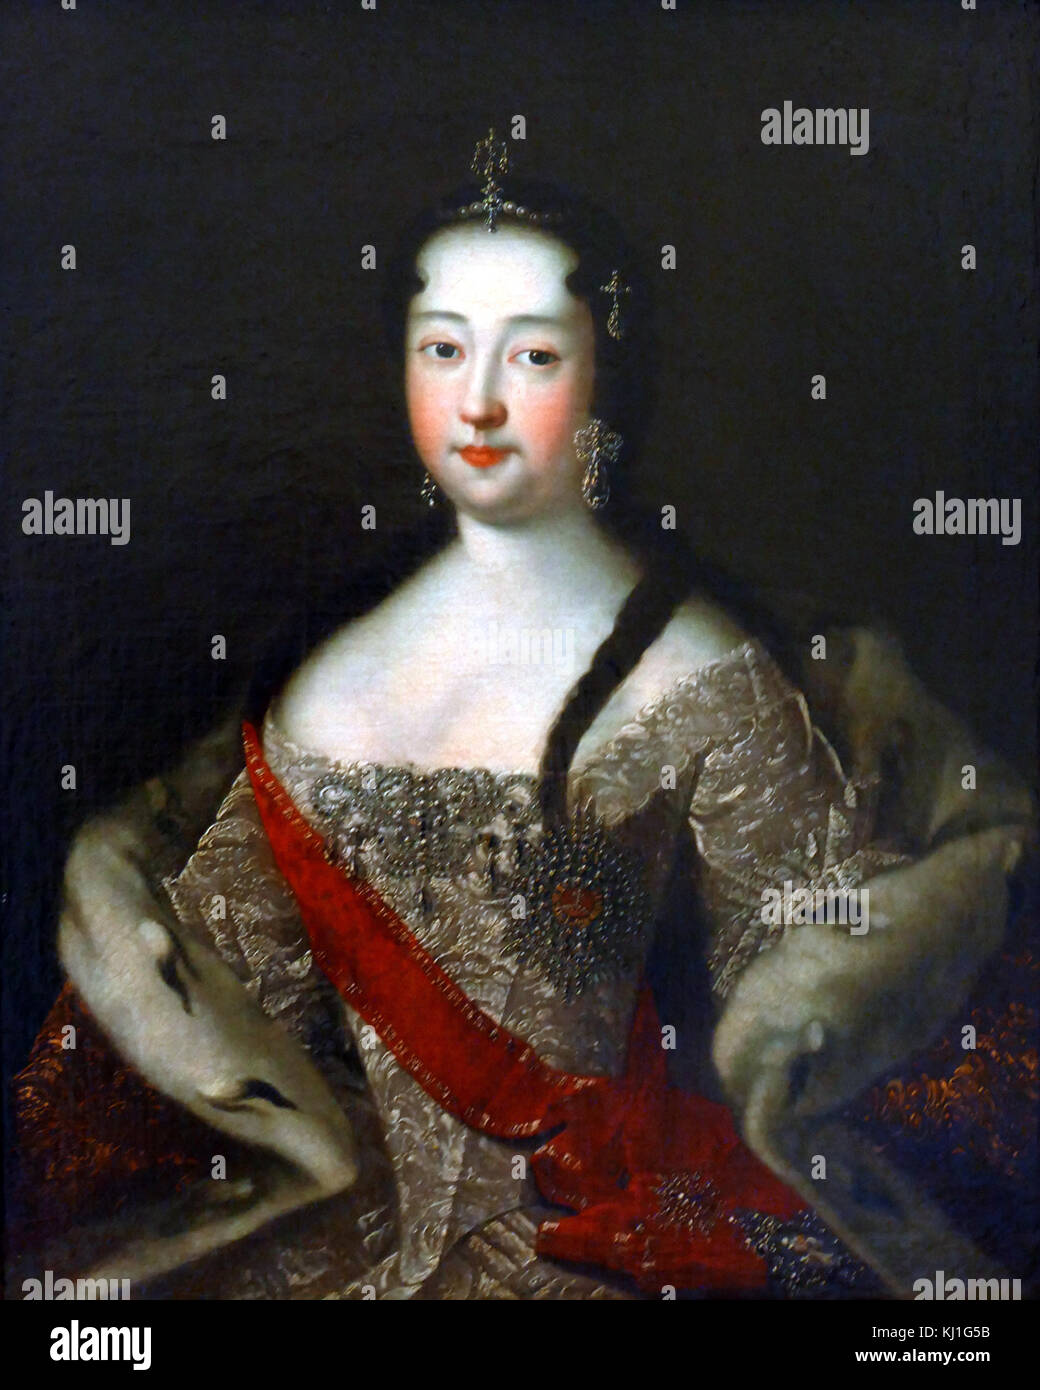 Portrait der Regent Sofia Alexeyevna (1657-1704). Kopie der ersten Hälfte des 19. Jahrhunderts aus einer früheren Portrait, von einem unbekannten Künstler. Öl auf Leinwand. Sophia Alexeyevna (1657-1704), regierte als Regent Russlands von 1682 bis 1689. Stockfoto